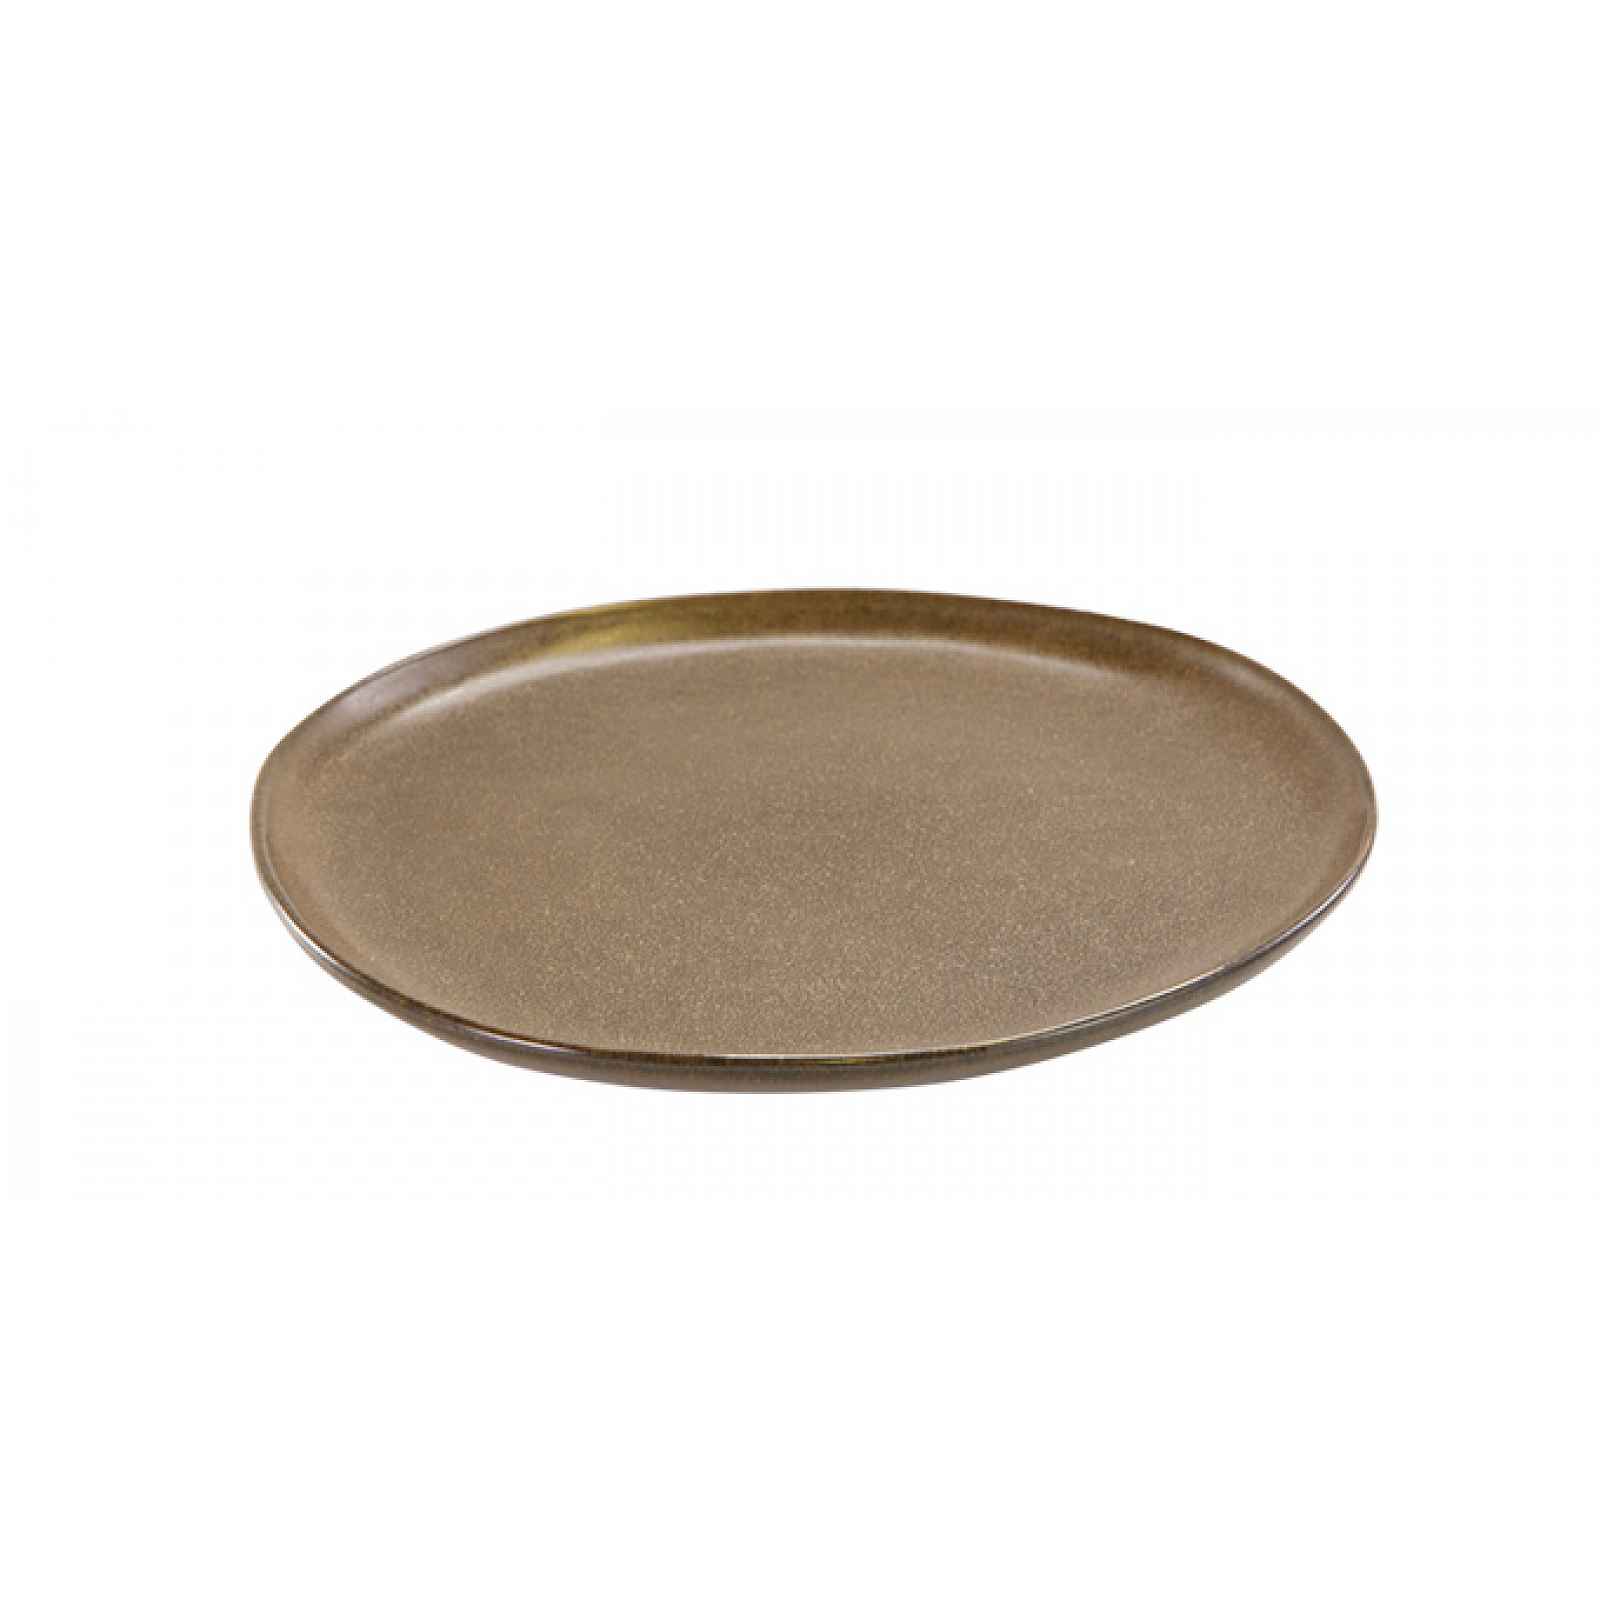 Tescoma Mělký talíř SIENA ¤ 27 cm